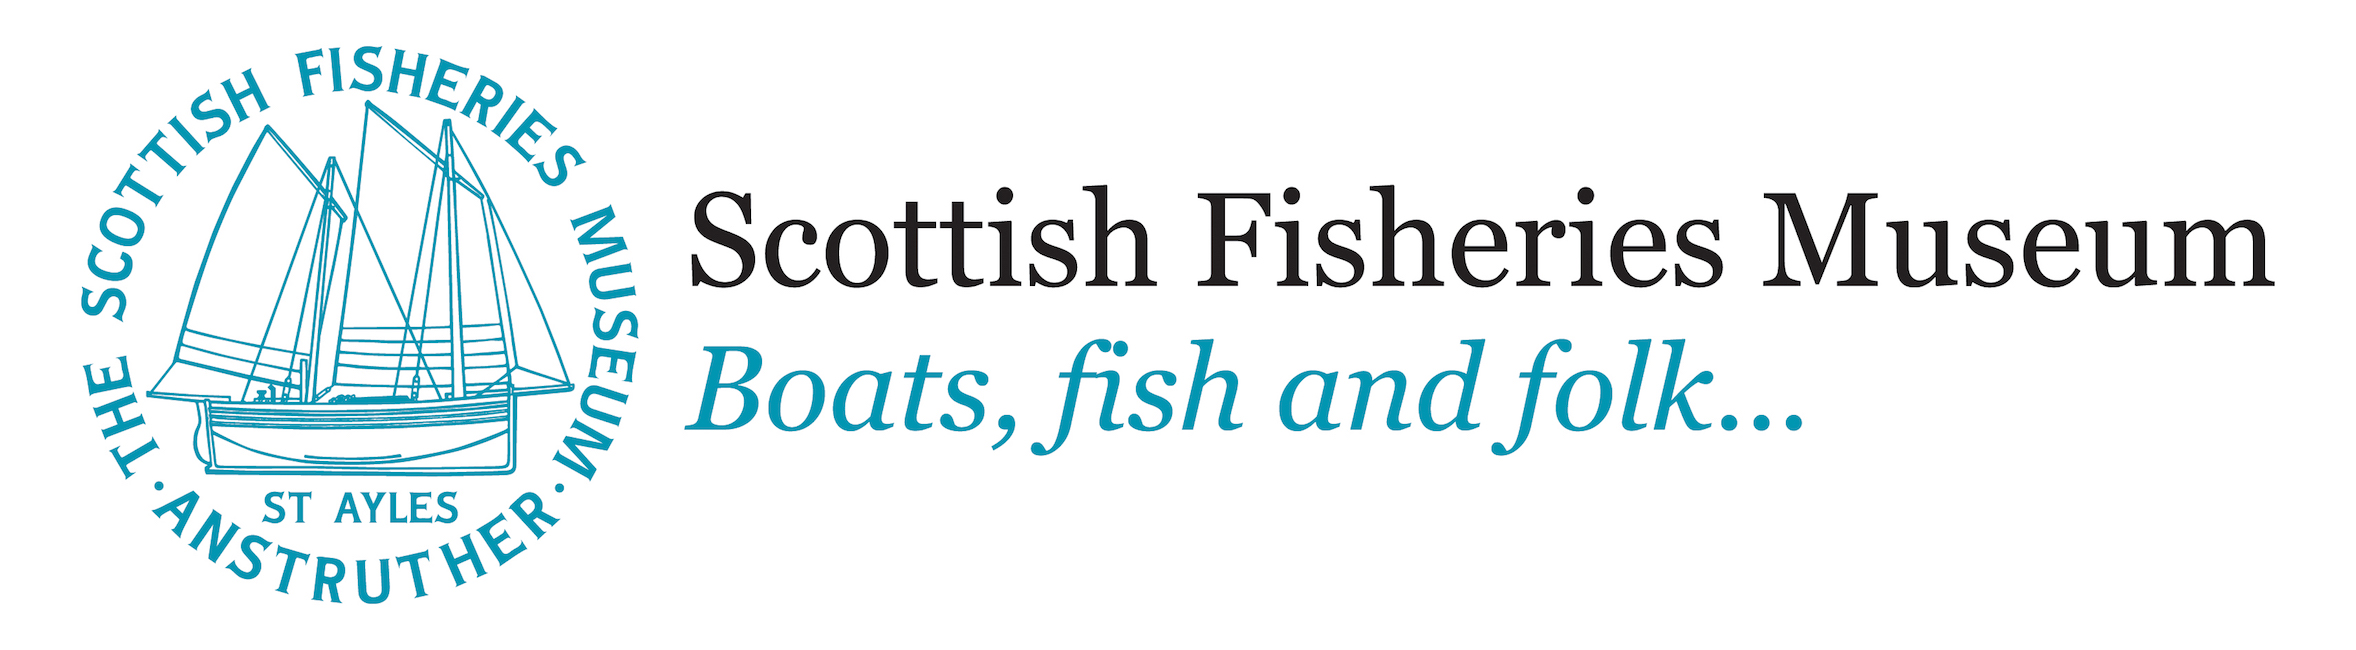 Scottish Fisheries Museum header